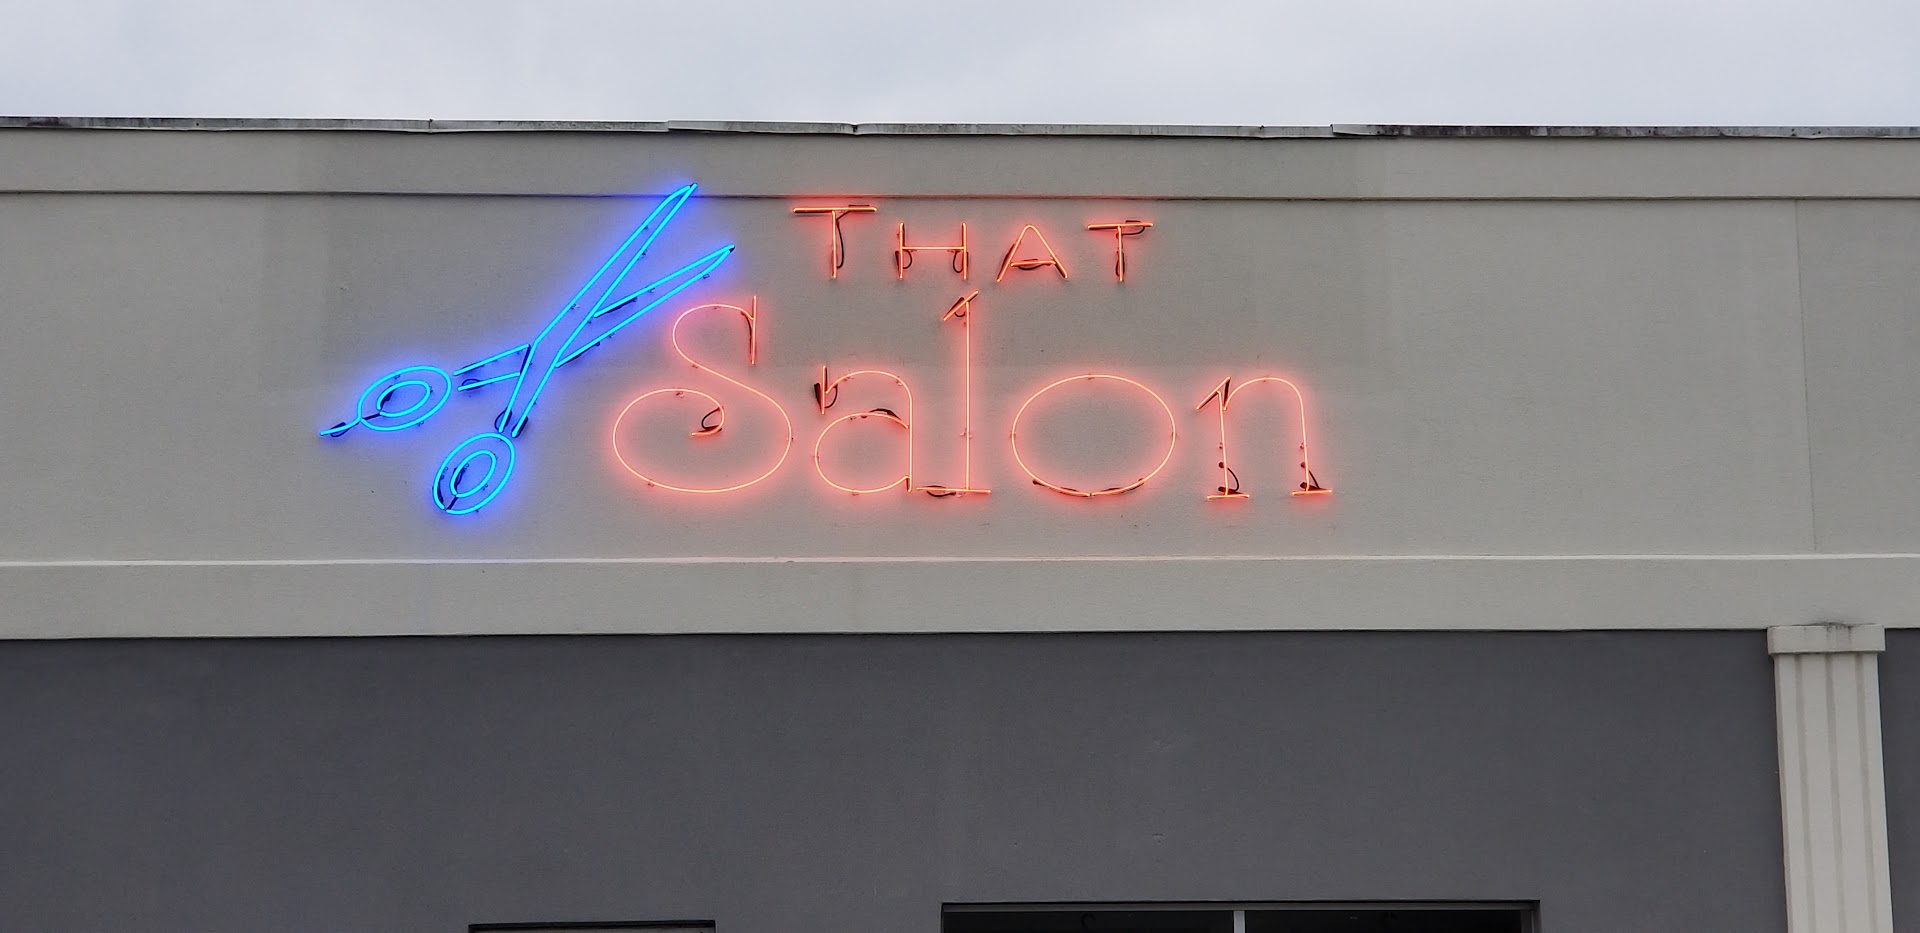 That Salon